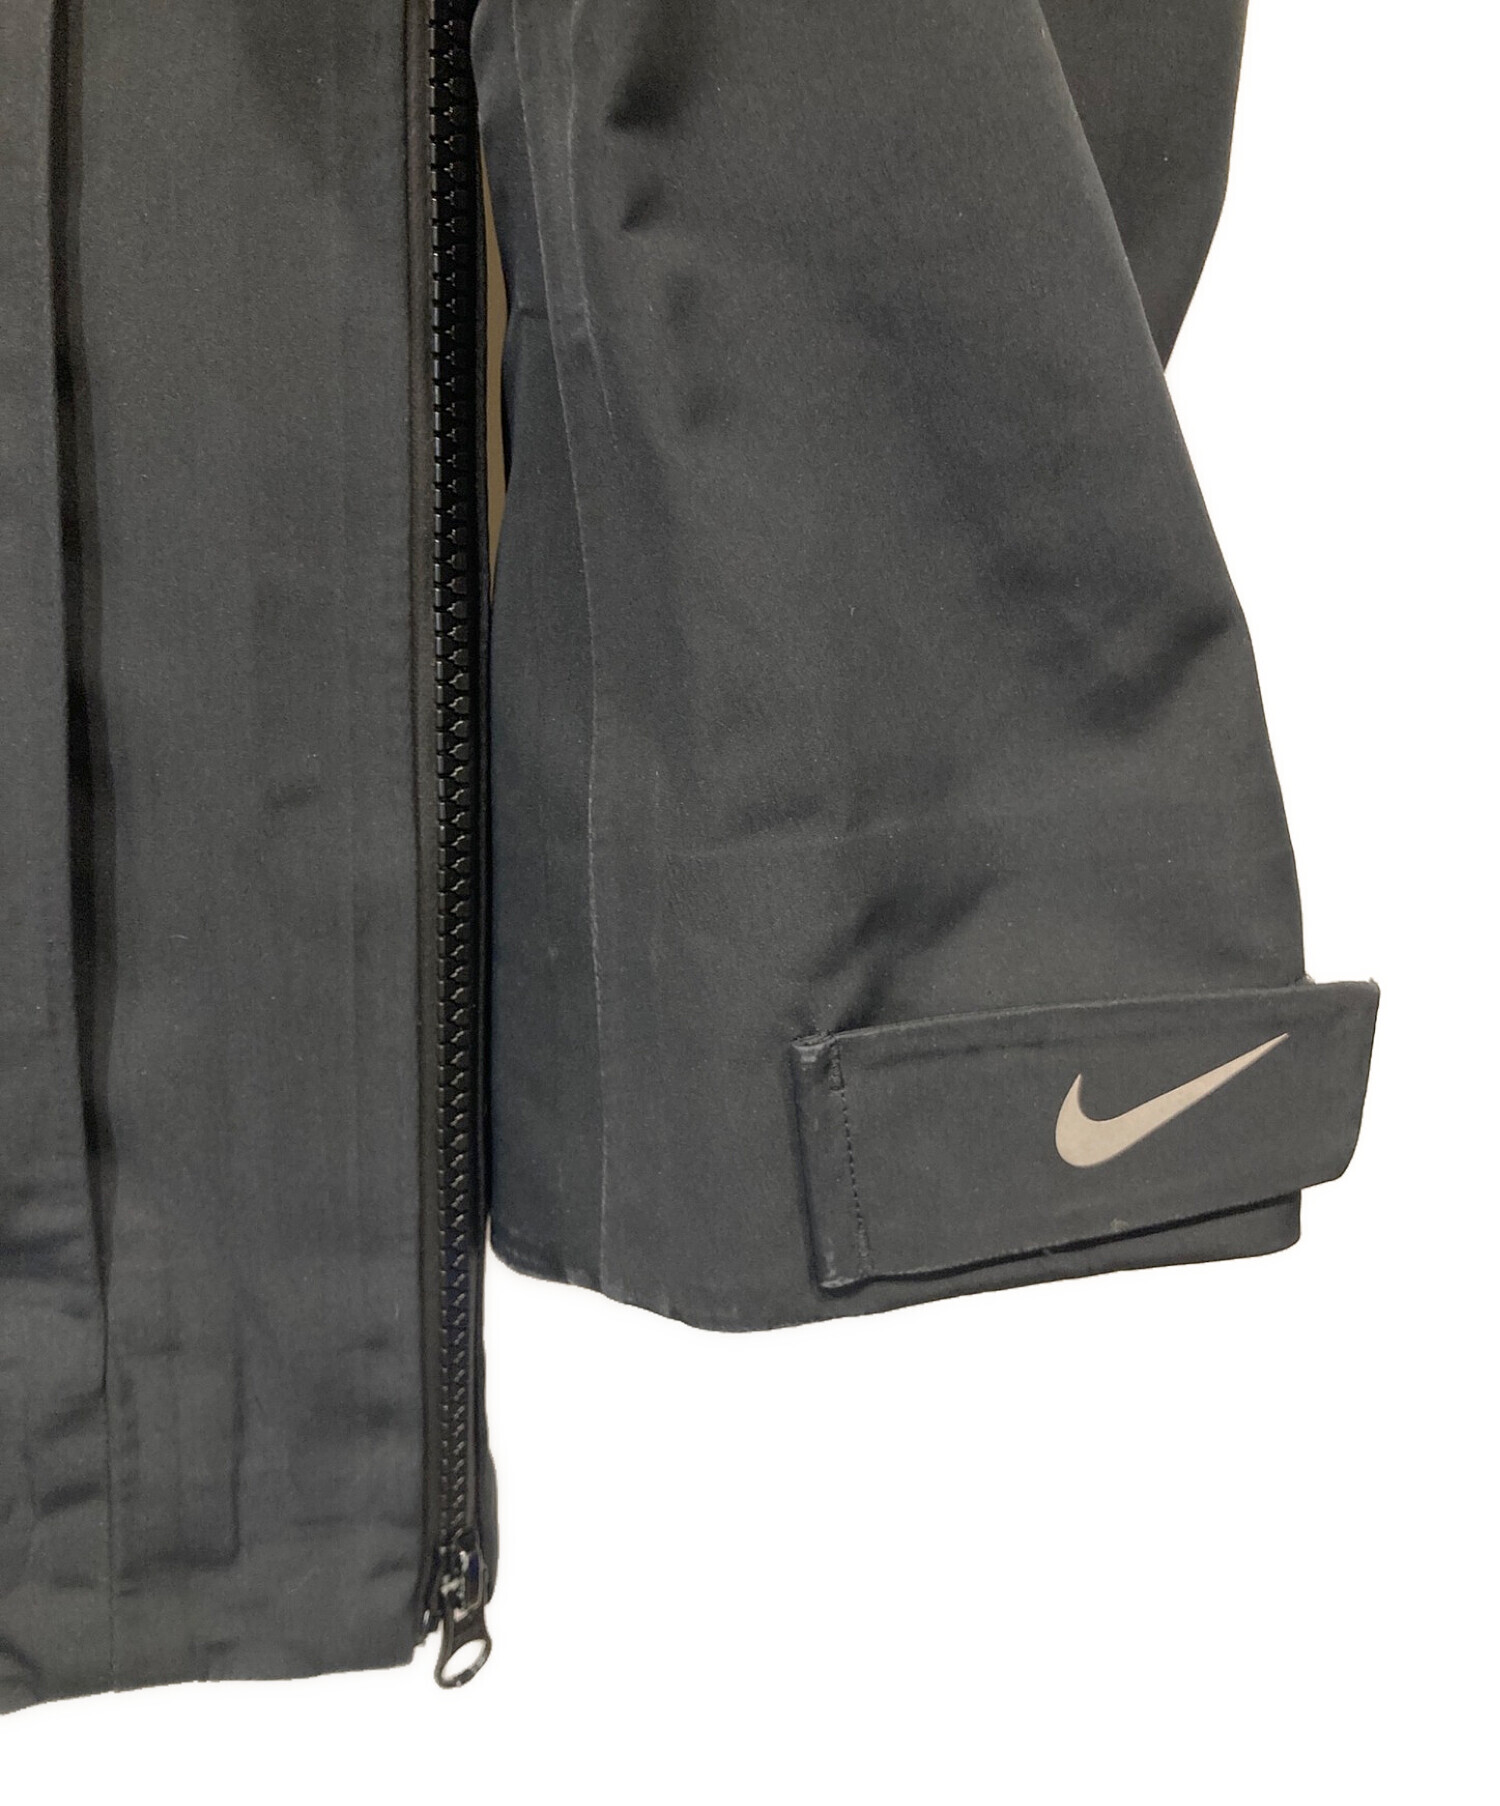 Nike LAB ACG Pullover Shell Jacket Sサイズありがとうございます